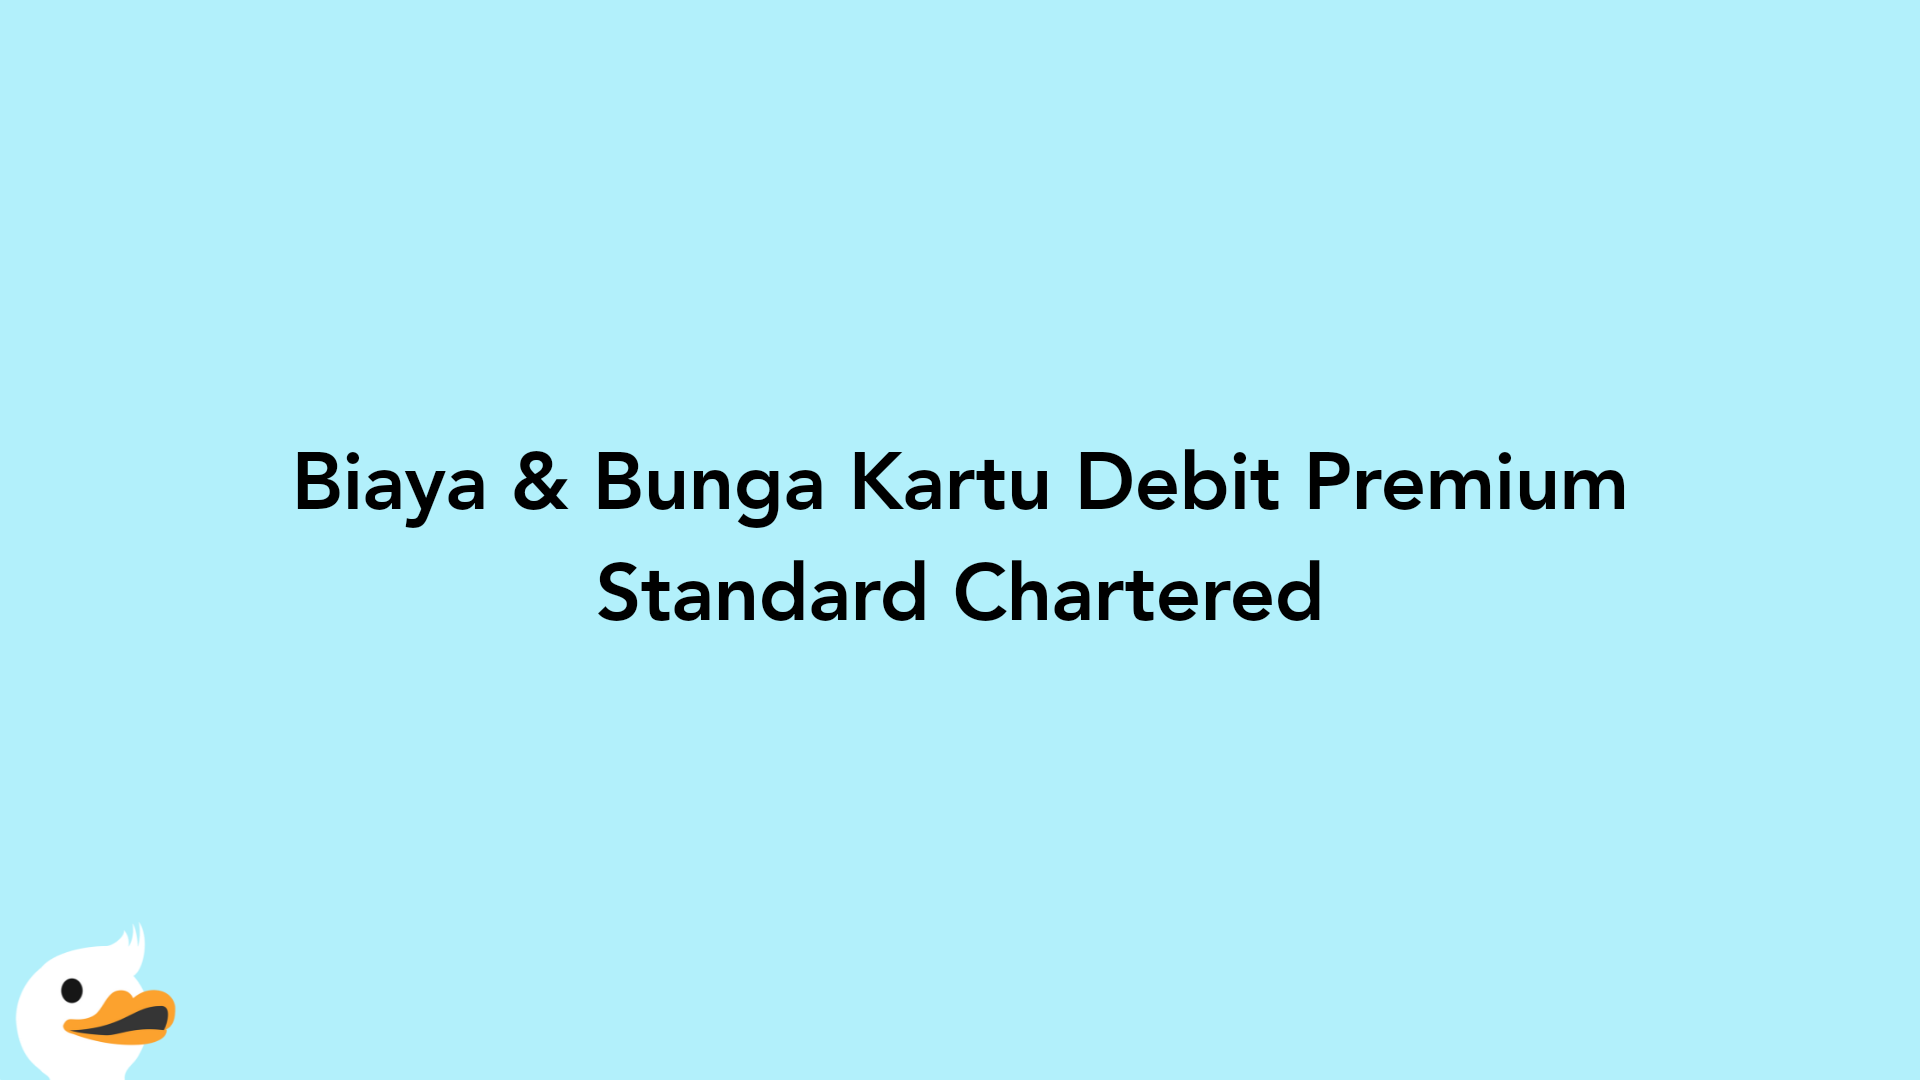 Biaya & Bunga Kartu Debit Premium Standard Chartered